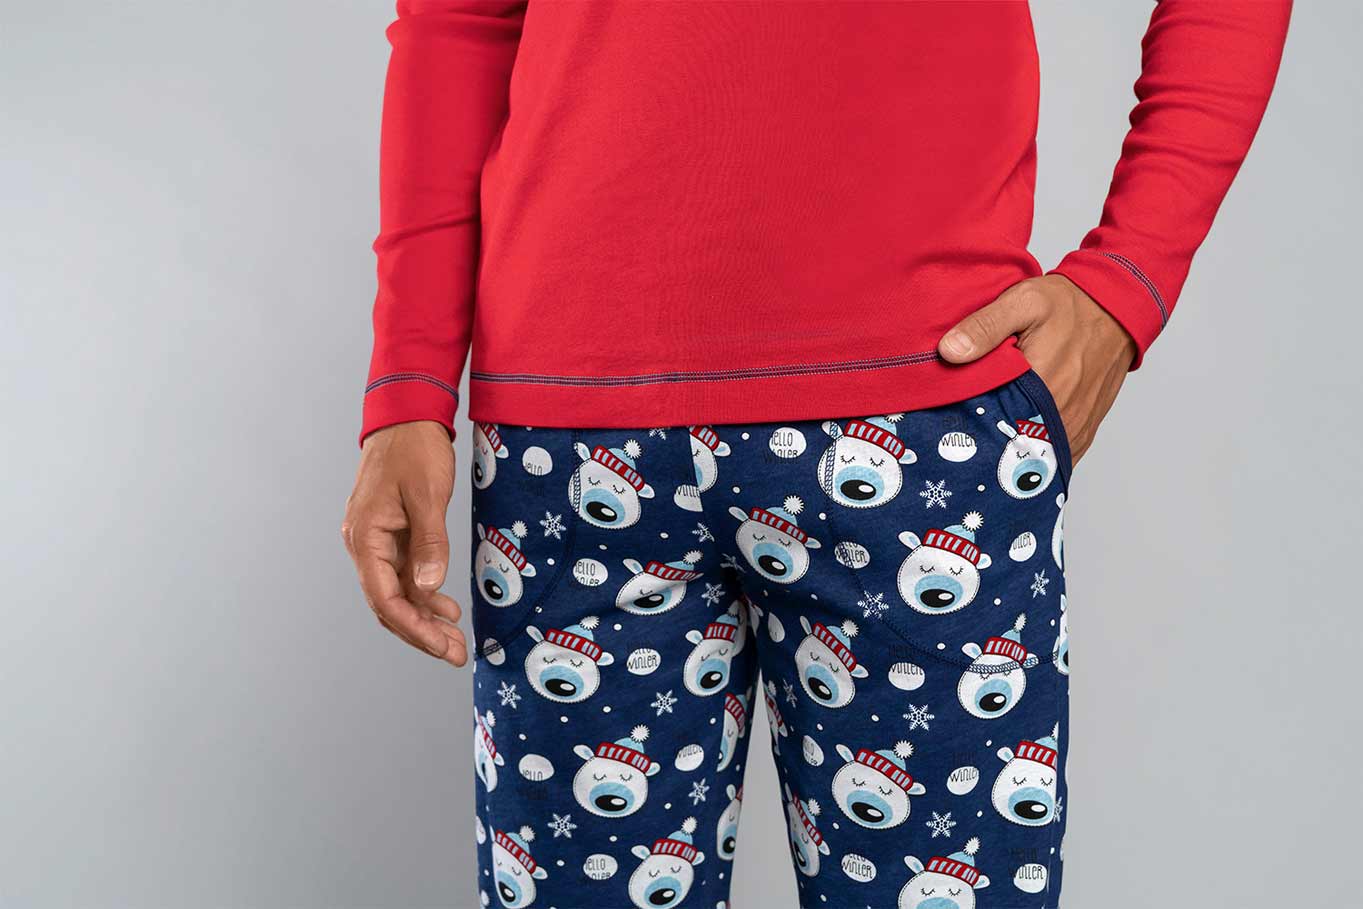 Spodný diel červeného pánskeho vianočného pyžama Italian Fashion Balu je so zábavným vzorom, má praktické vrecká, pohodlný lem s manžetami